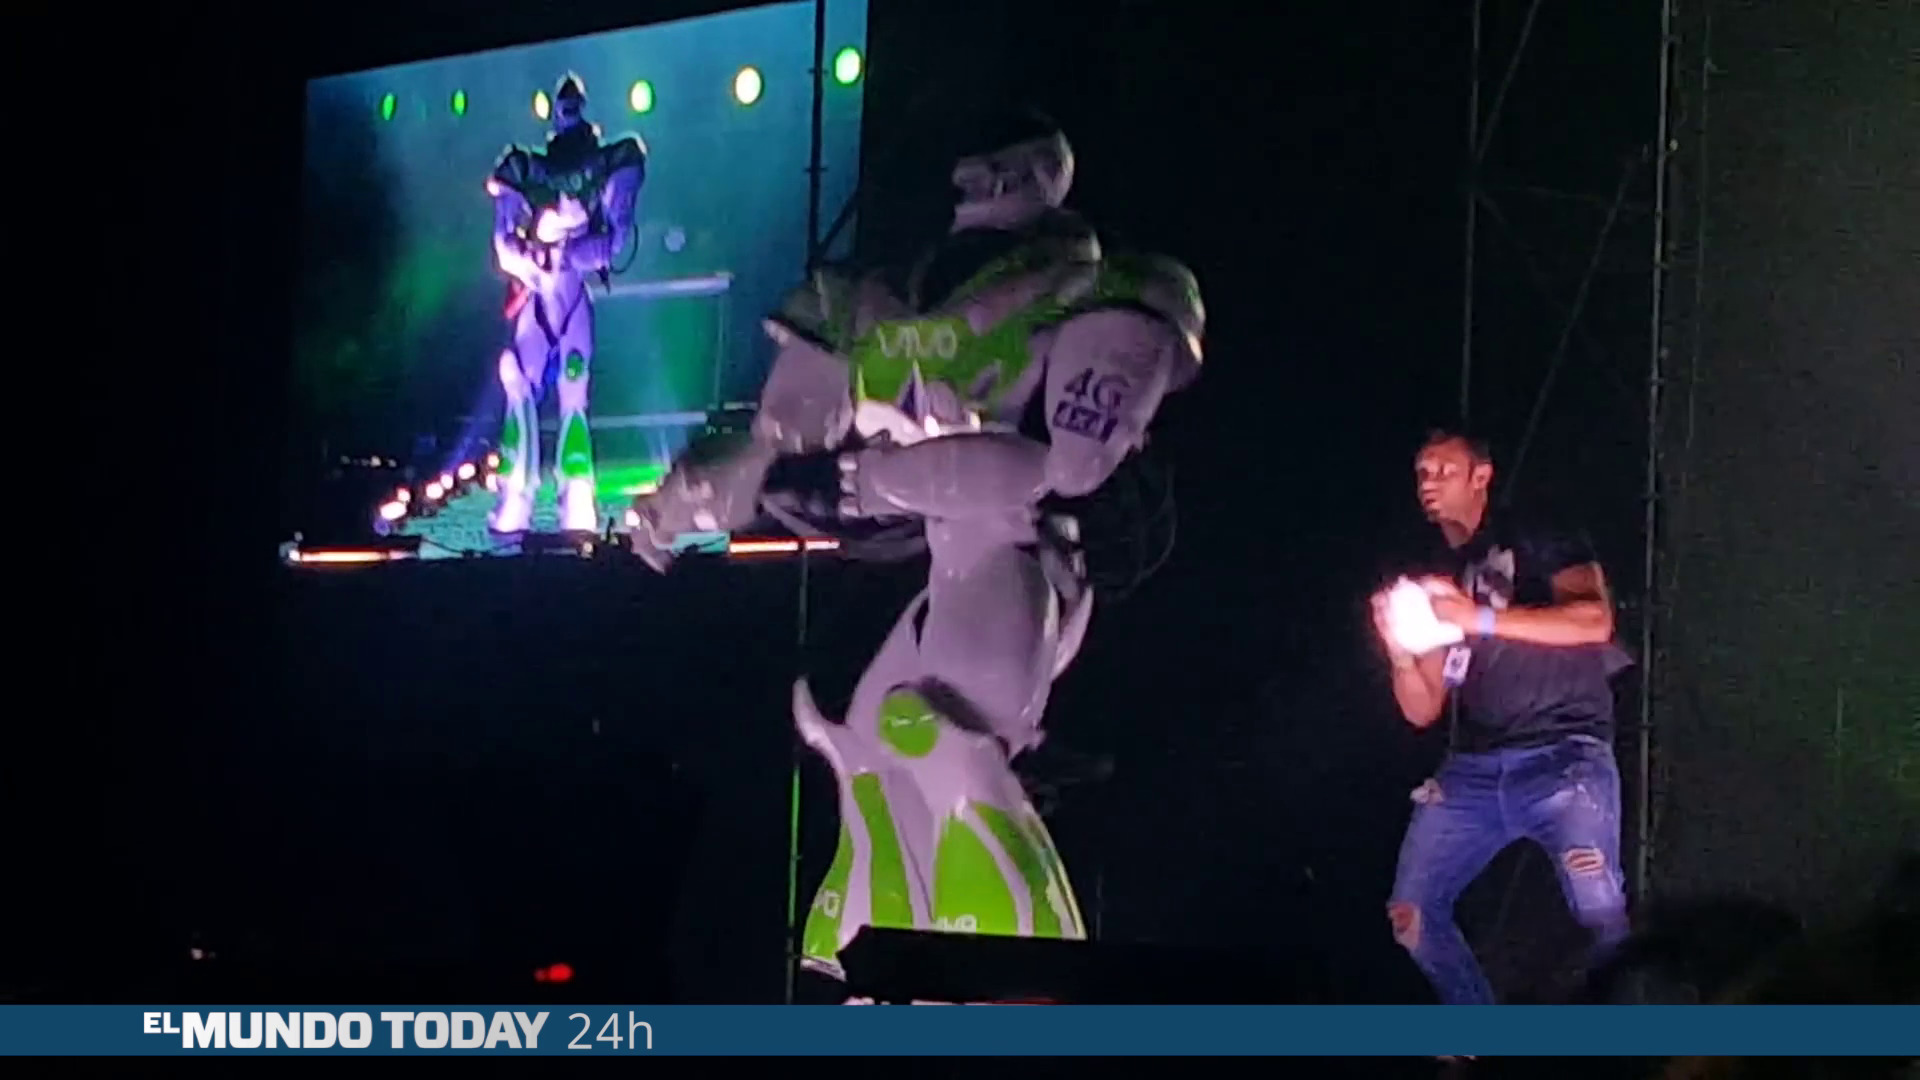 Temporada 1 El baile del robot es ya indistinguible de un baile normal